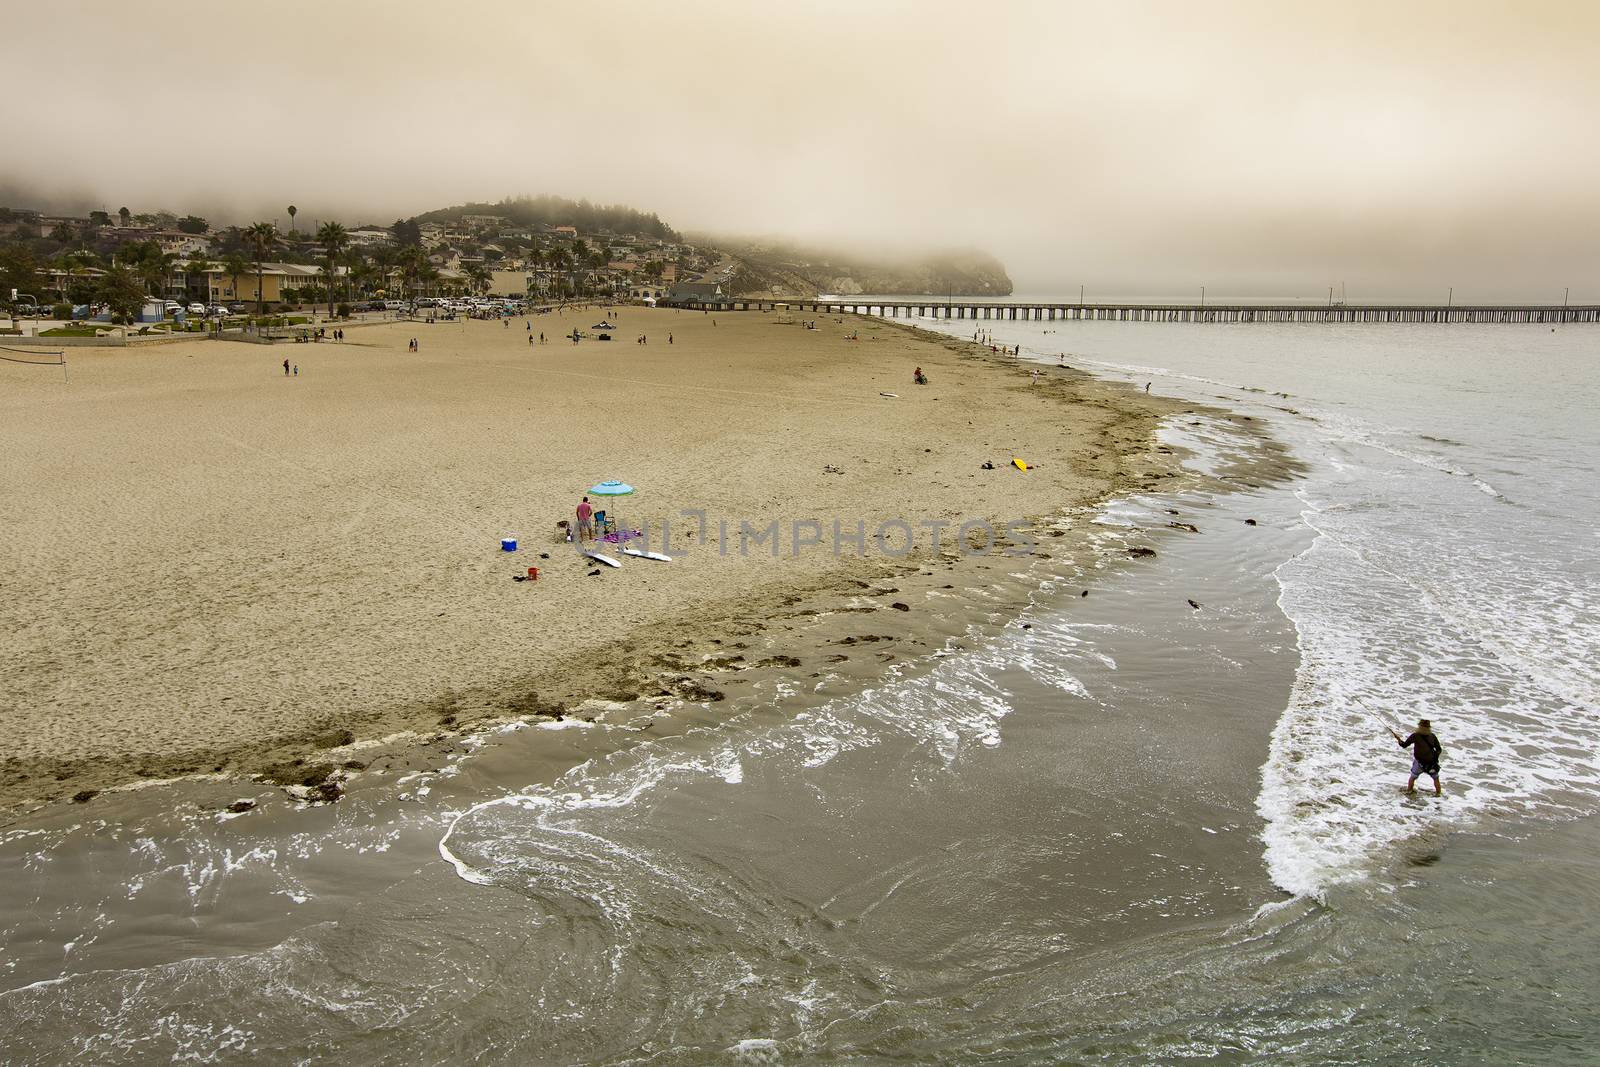 Fog receding as morning activity picks up at Avila Beach in California